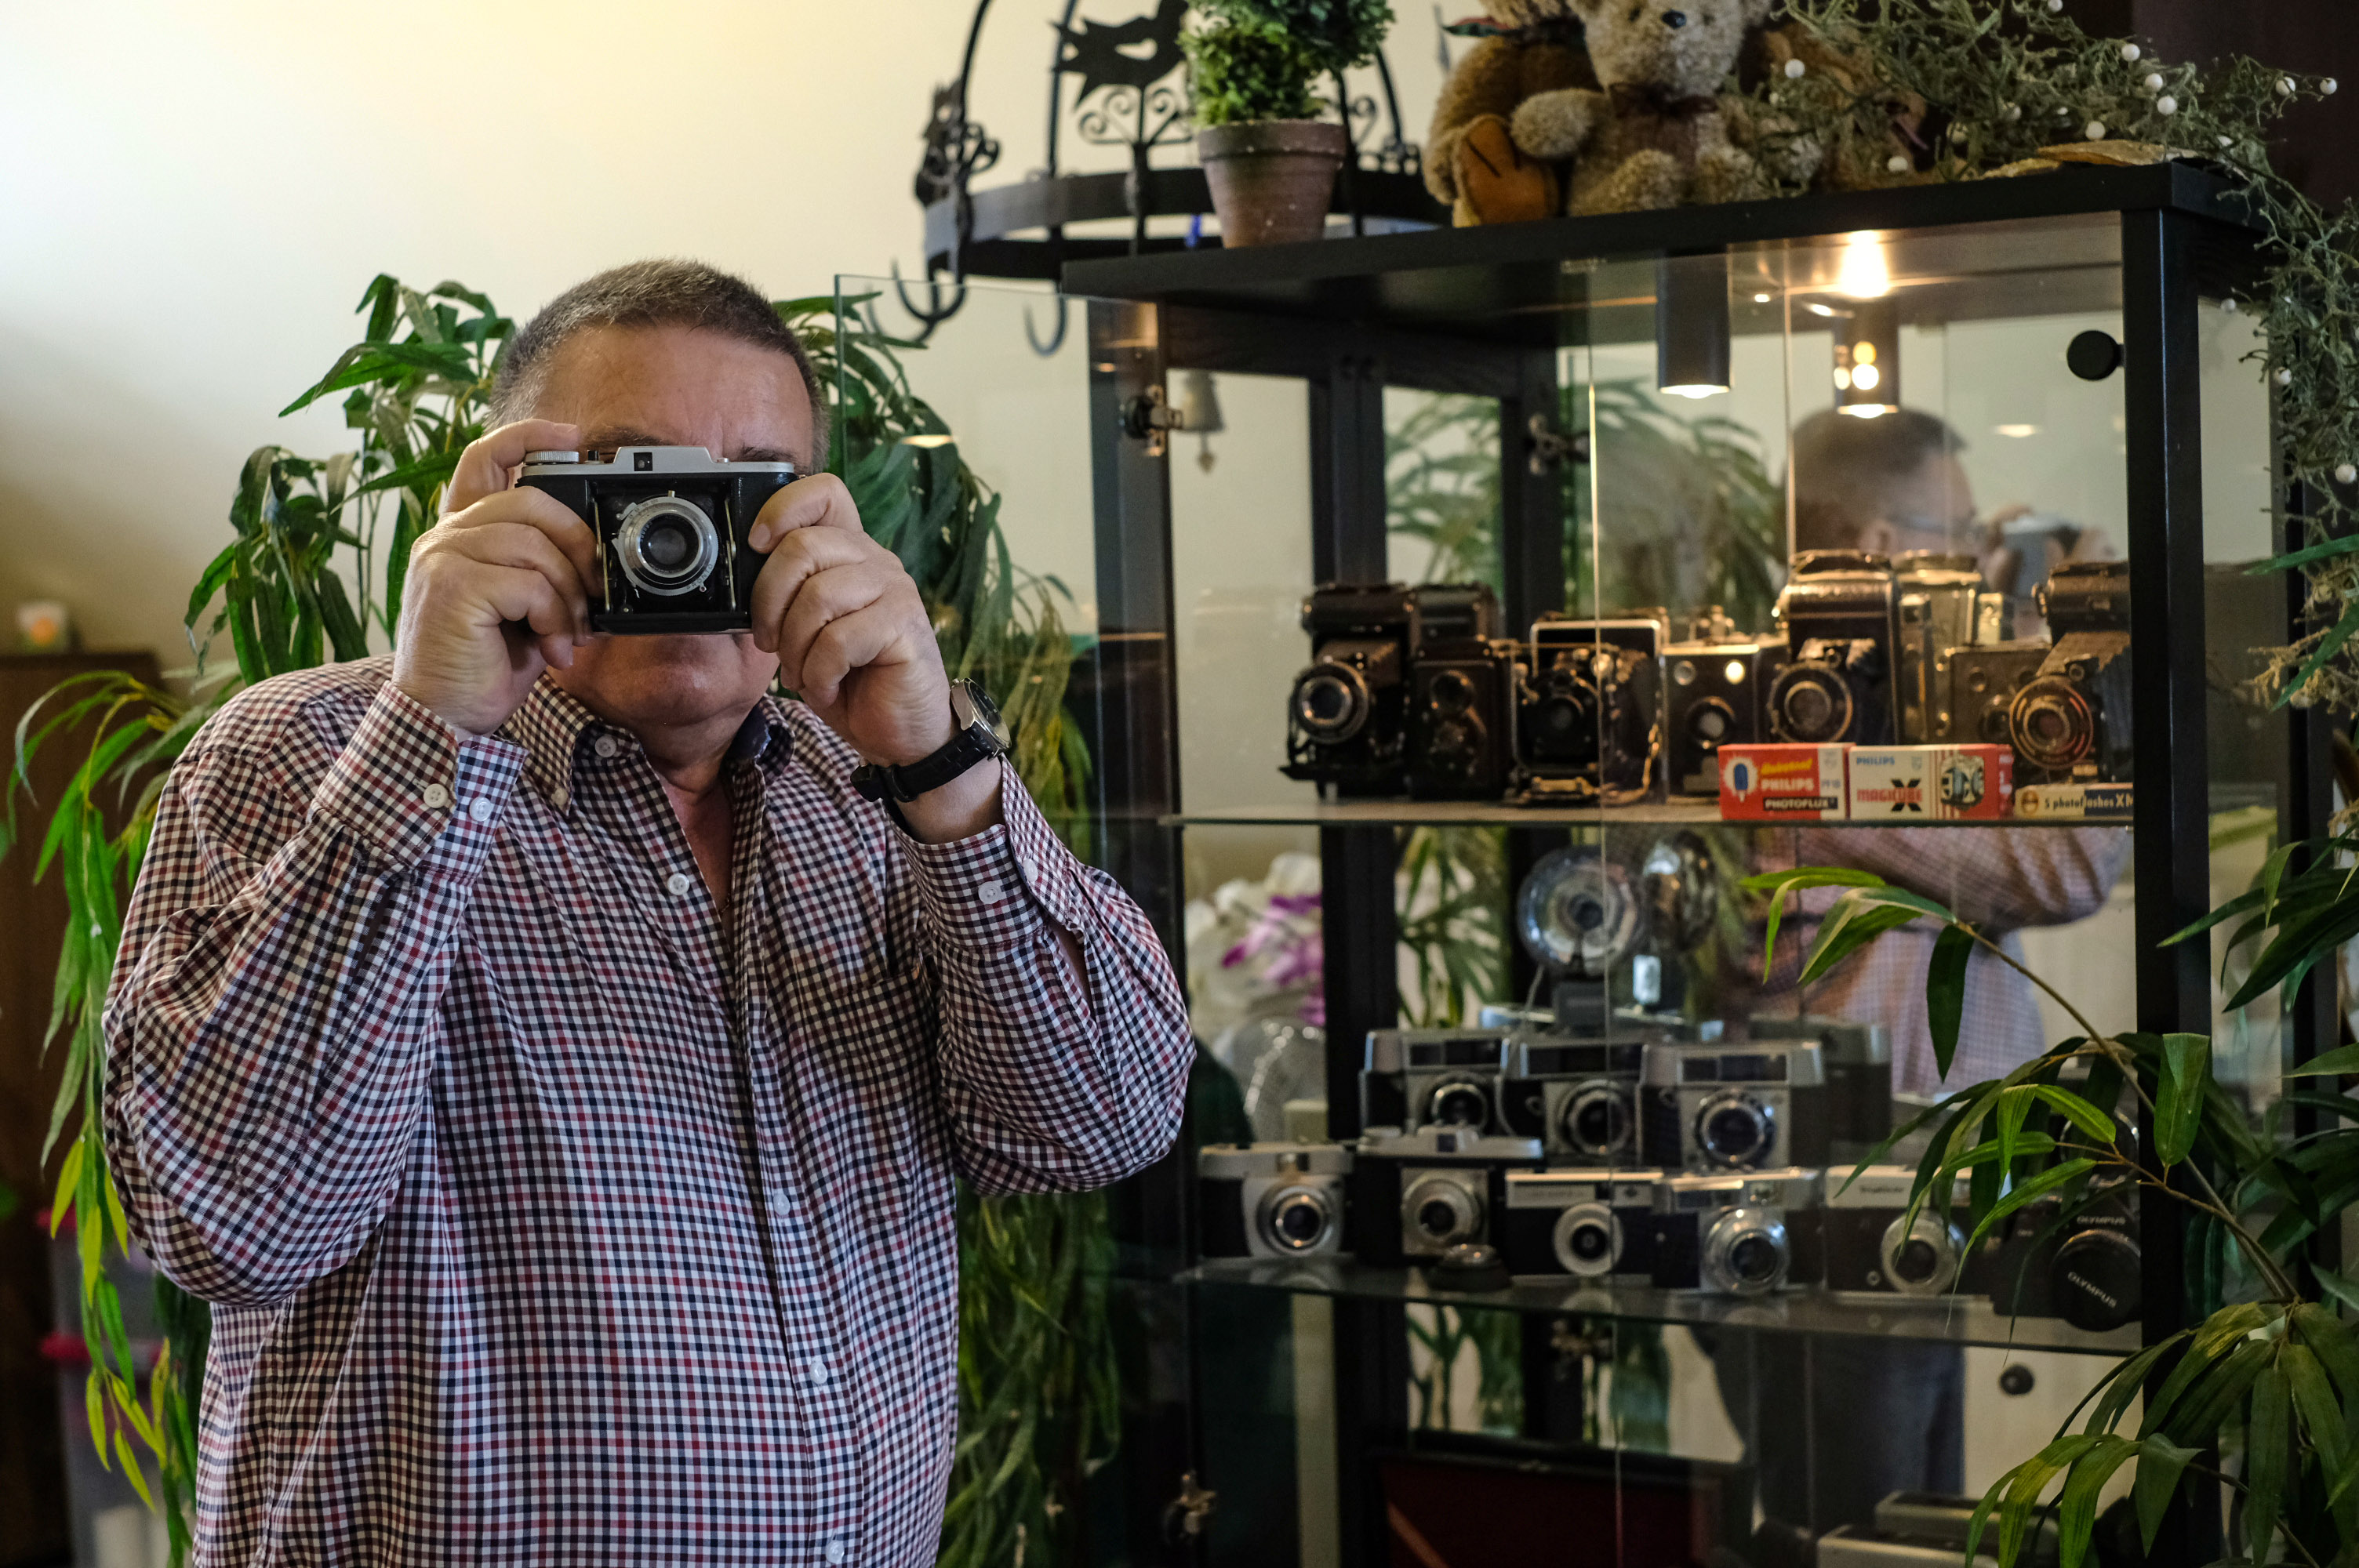 Mann hält sich alte Kamera vor das Gesicht und steht neben Schrank mit vielen alten Kameras.